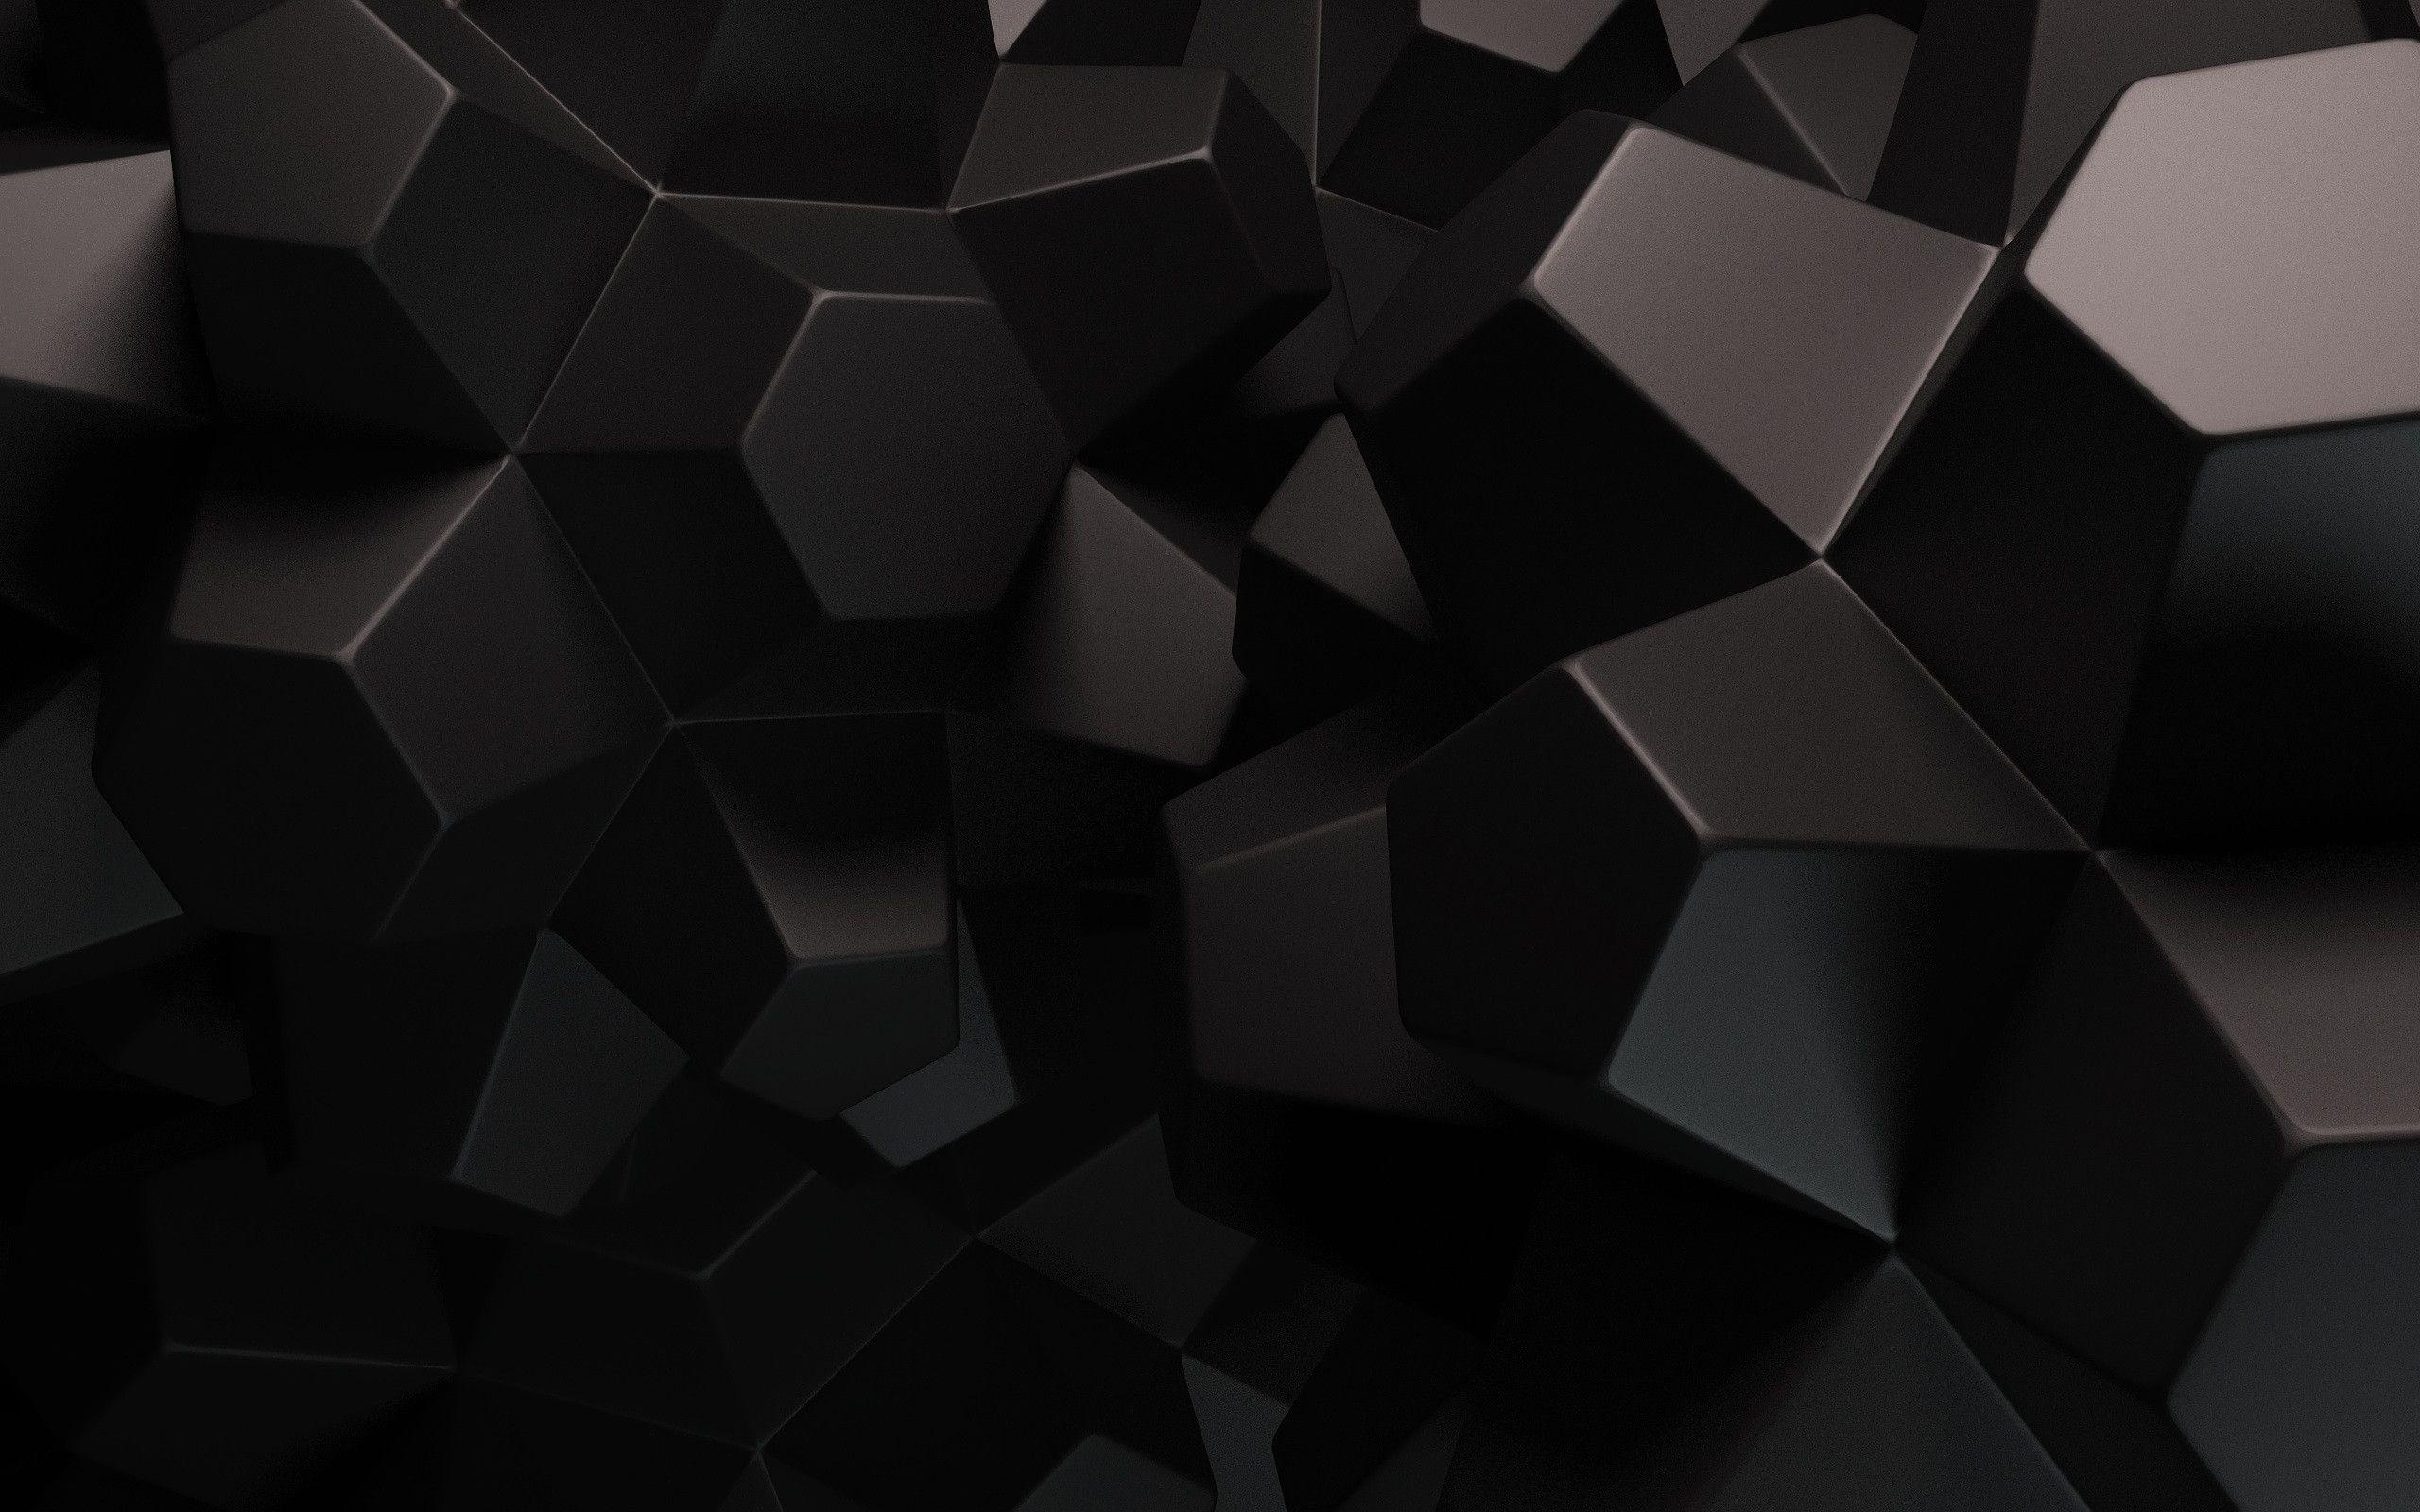 HD Abstract Wallpapers Black mang đến cho người dùng những bức ảnh nền đen tuyệt đẹp với độ phân giải cao, chất lượng hình ảnh tuyệt vời và kiểu dáng trừu tượng độc đáo. Nhấn vào ảnh liên quan để tải về và sử dụng làm hình nền cho thiết bị của bạn, mang đến một trải nghiệm tuyệt vời cho mắt.